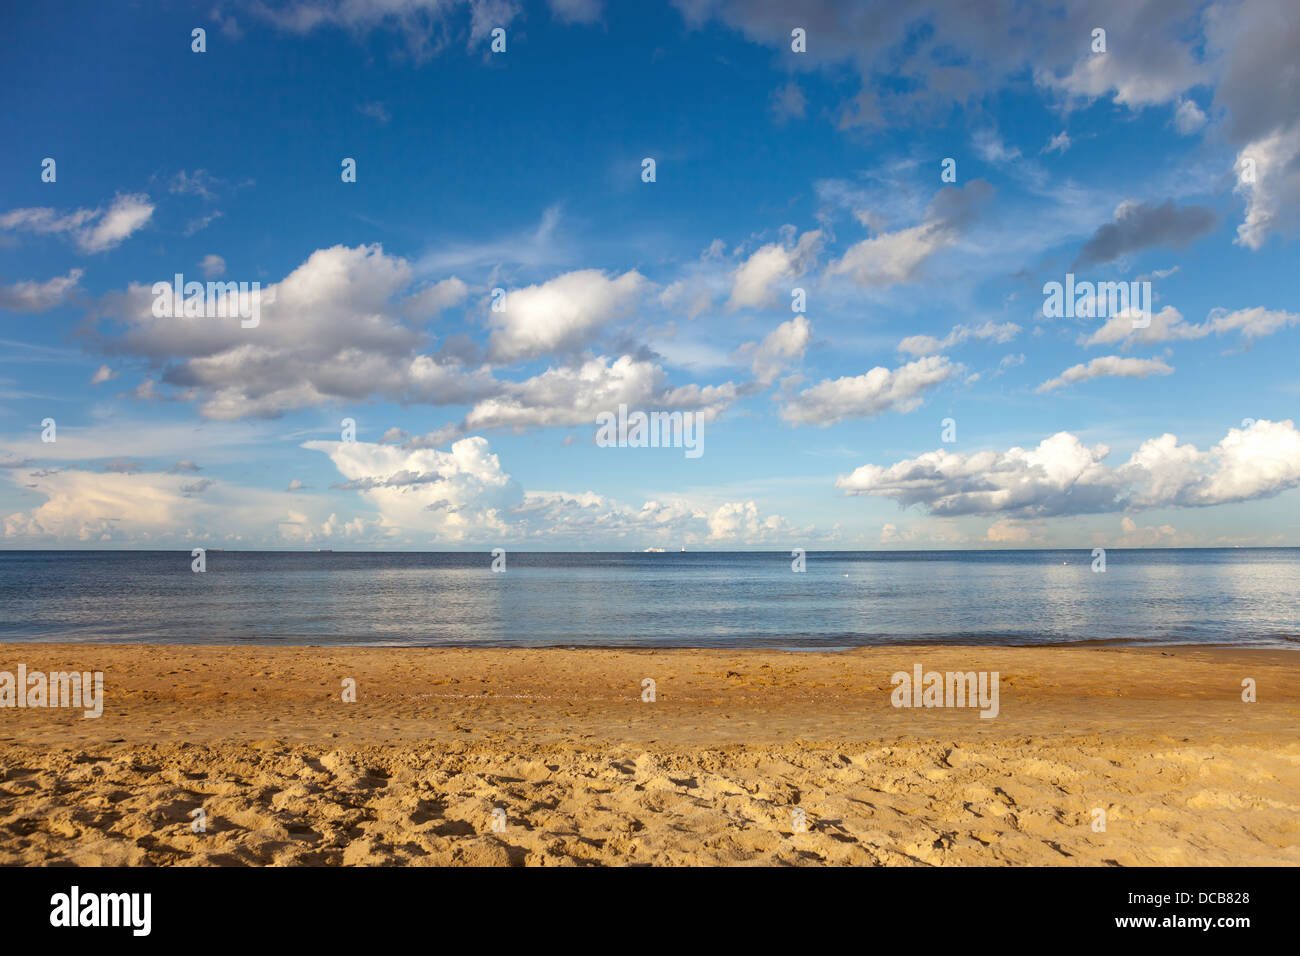 Spiaggia in Jelitkowo sulla costa baltica vicino a Sopot, Polonia. Foto Stock